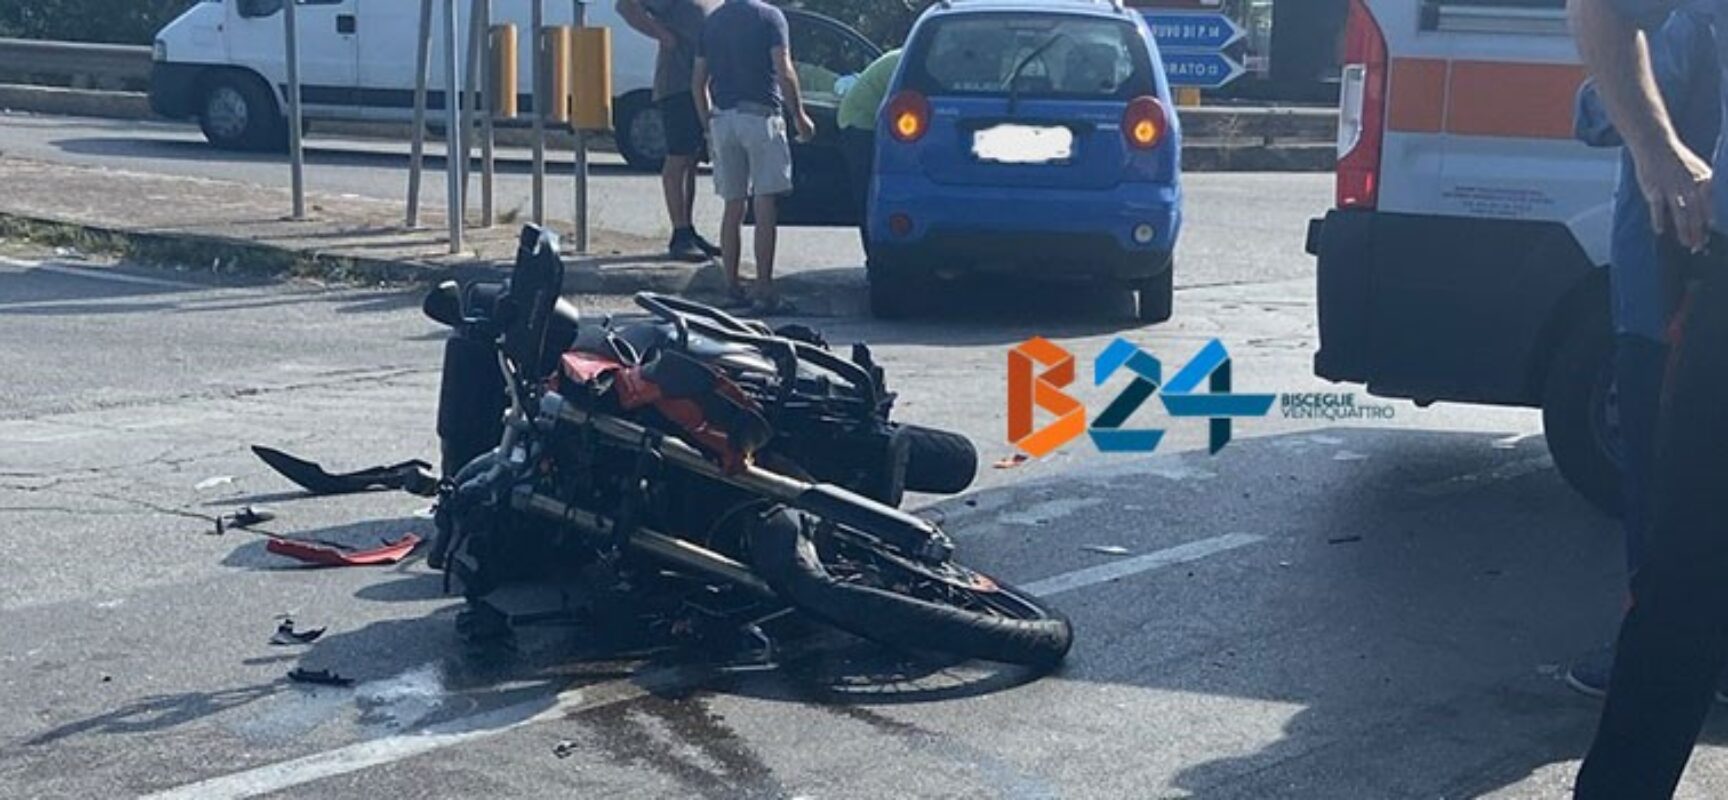 Scontro auto-moto su via Sant’Andrea, un ferito trasportato in ospedale